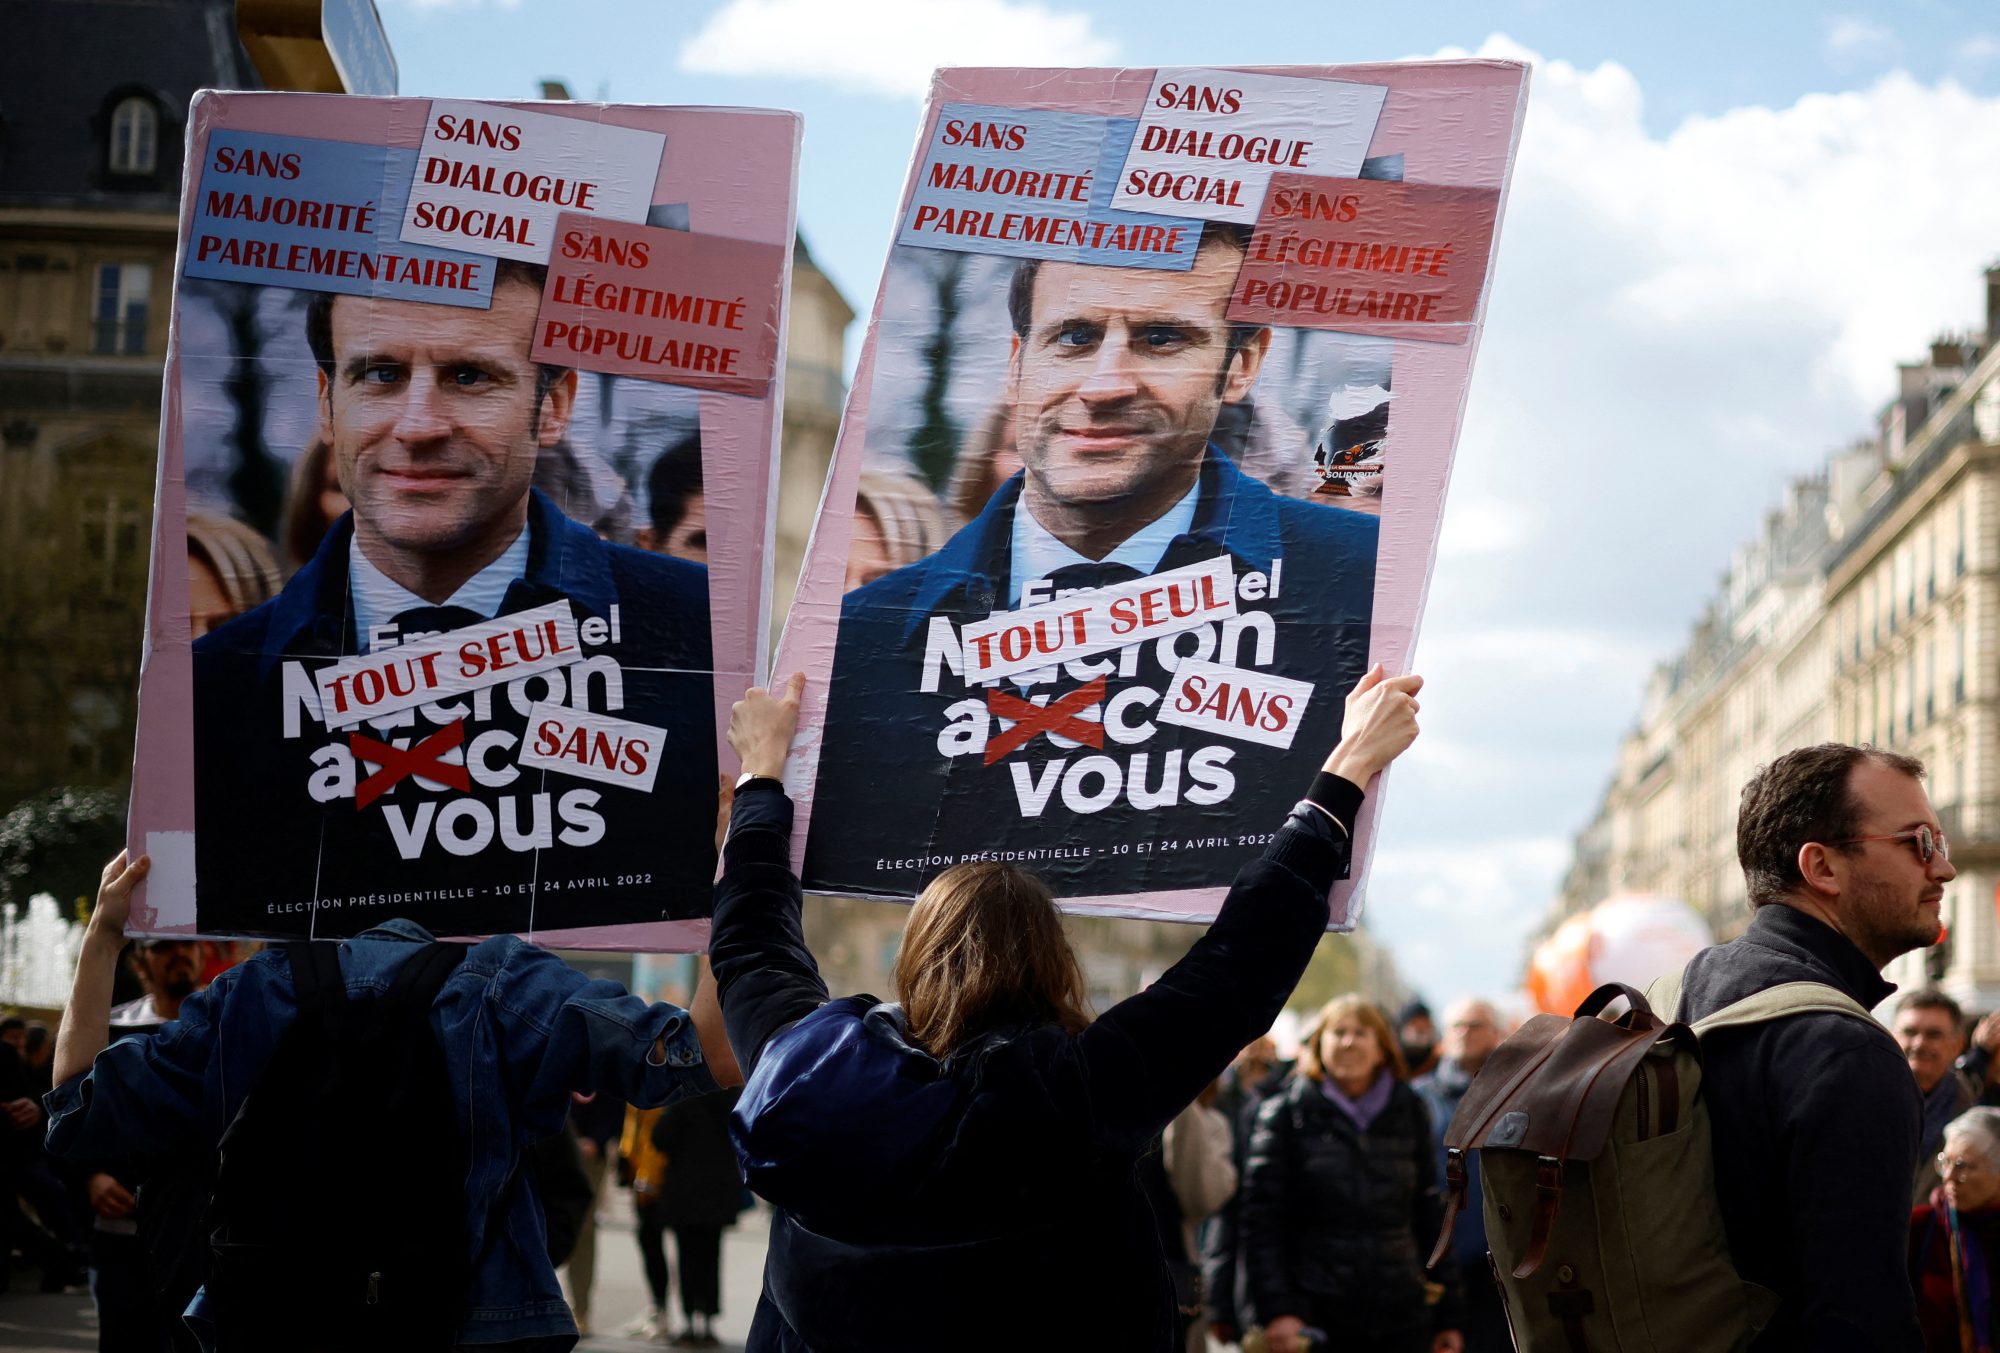 Francouzi na protest proti důchodové reformě kříží ulicemi už dlouhé týdny | Foto: Sarah Meyssonnier | Zdroj: Reuters